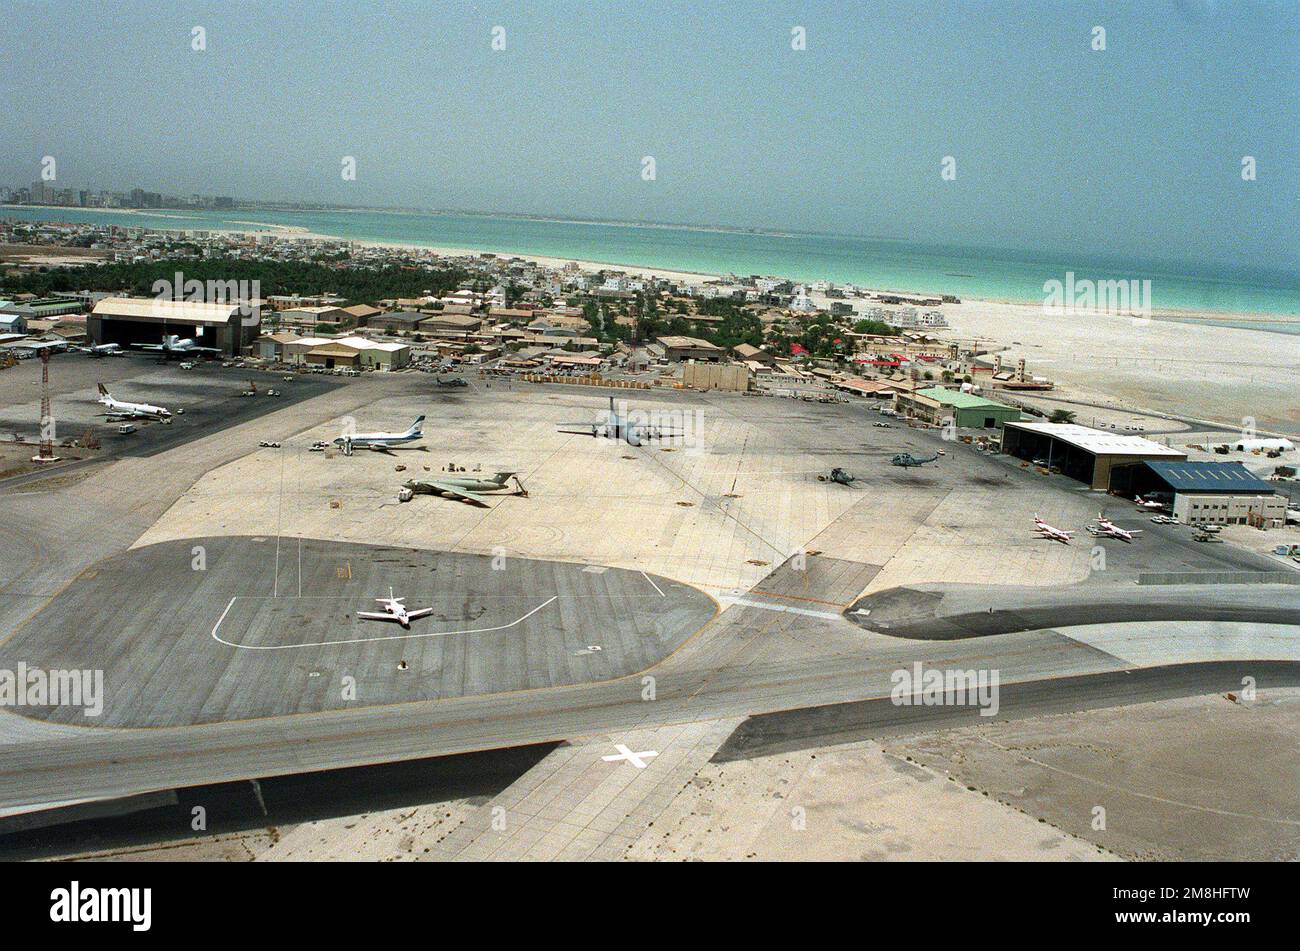 Una panoramica dell'aeroporto del Bahrain con vari aerei militari e civili parcheggiati sulle rampe. Paese: Bahrein (BHR) Foto Stock